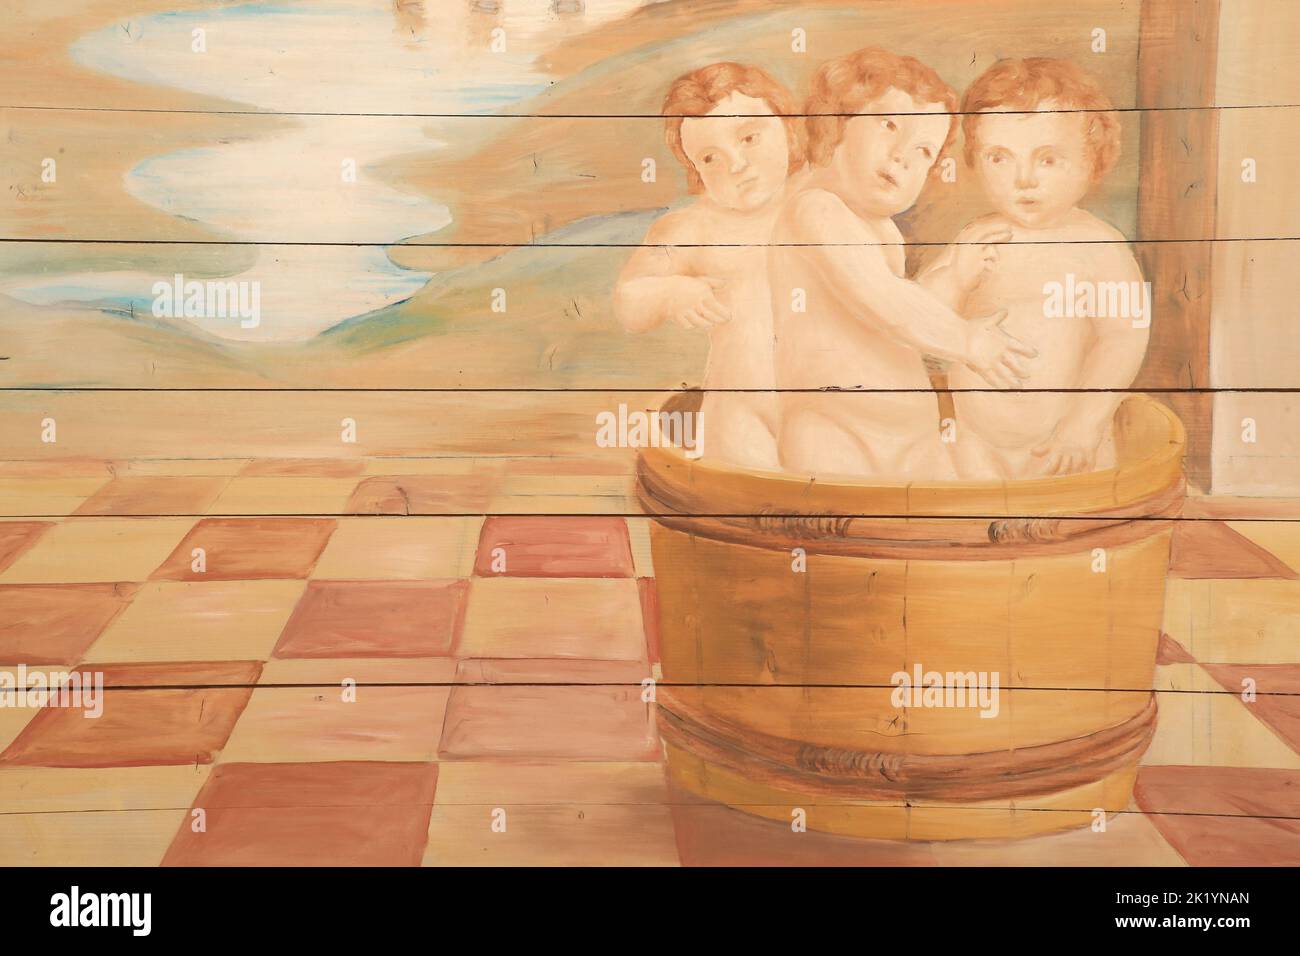 Trois enfants dans une bassine en bois. Distali. Saint-Nicolas de Myre. Peinture murale restaurée par Edouard Borga. Eglise Saint-Nicolas de Combloux. Foto Stock